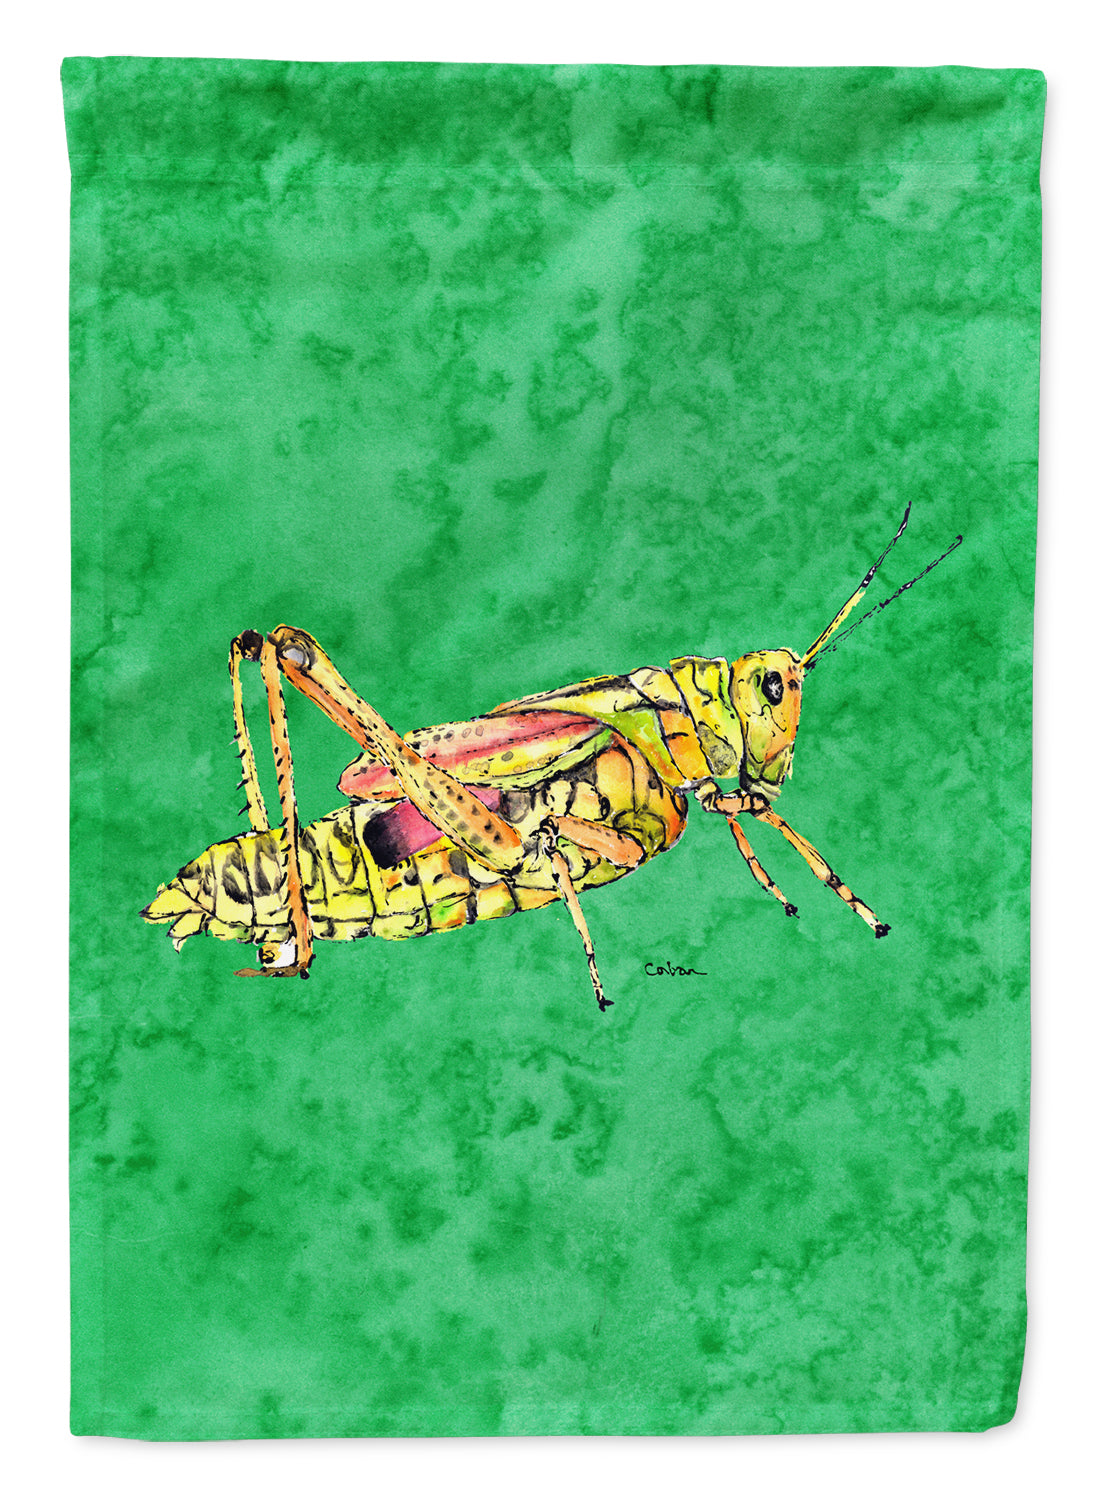 Grasshopper on Green Flag Garden Size.